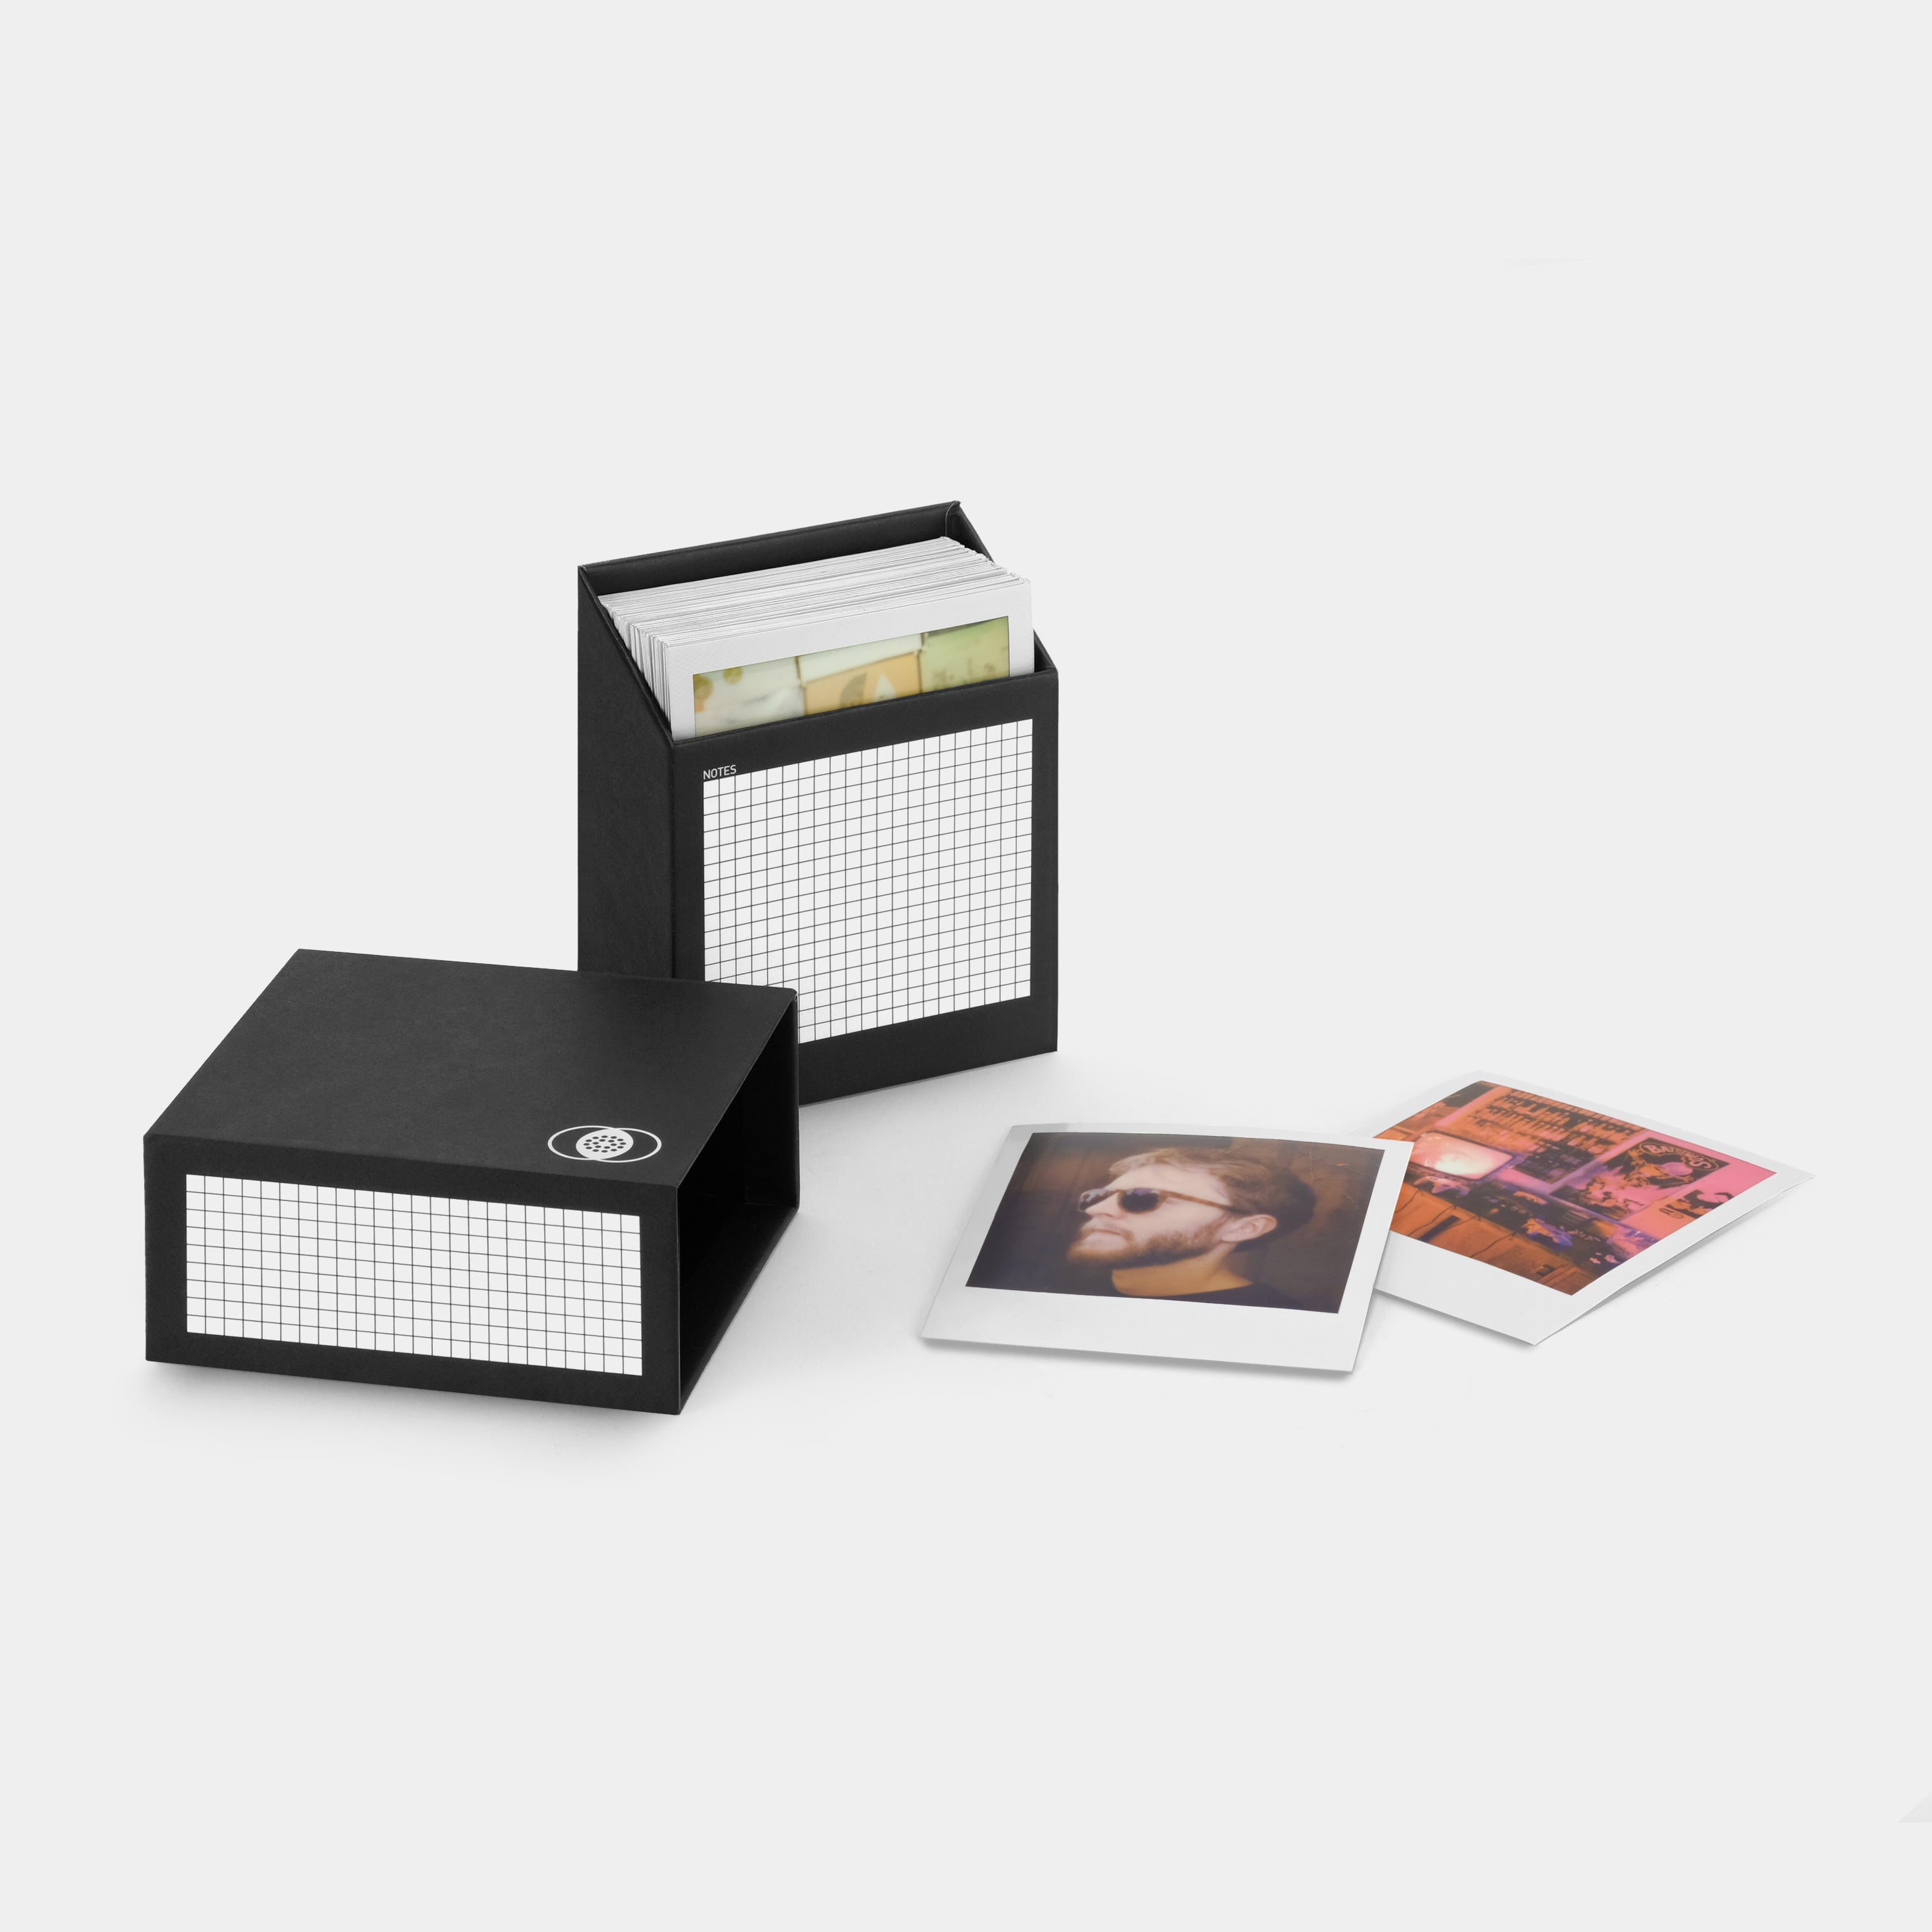 2 pack) Polaroid Photo Album - Large Black 